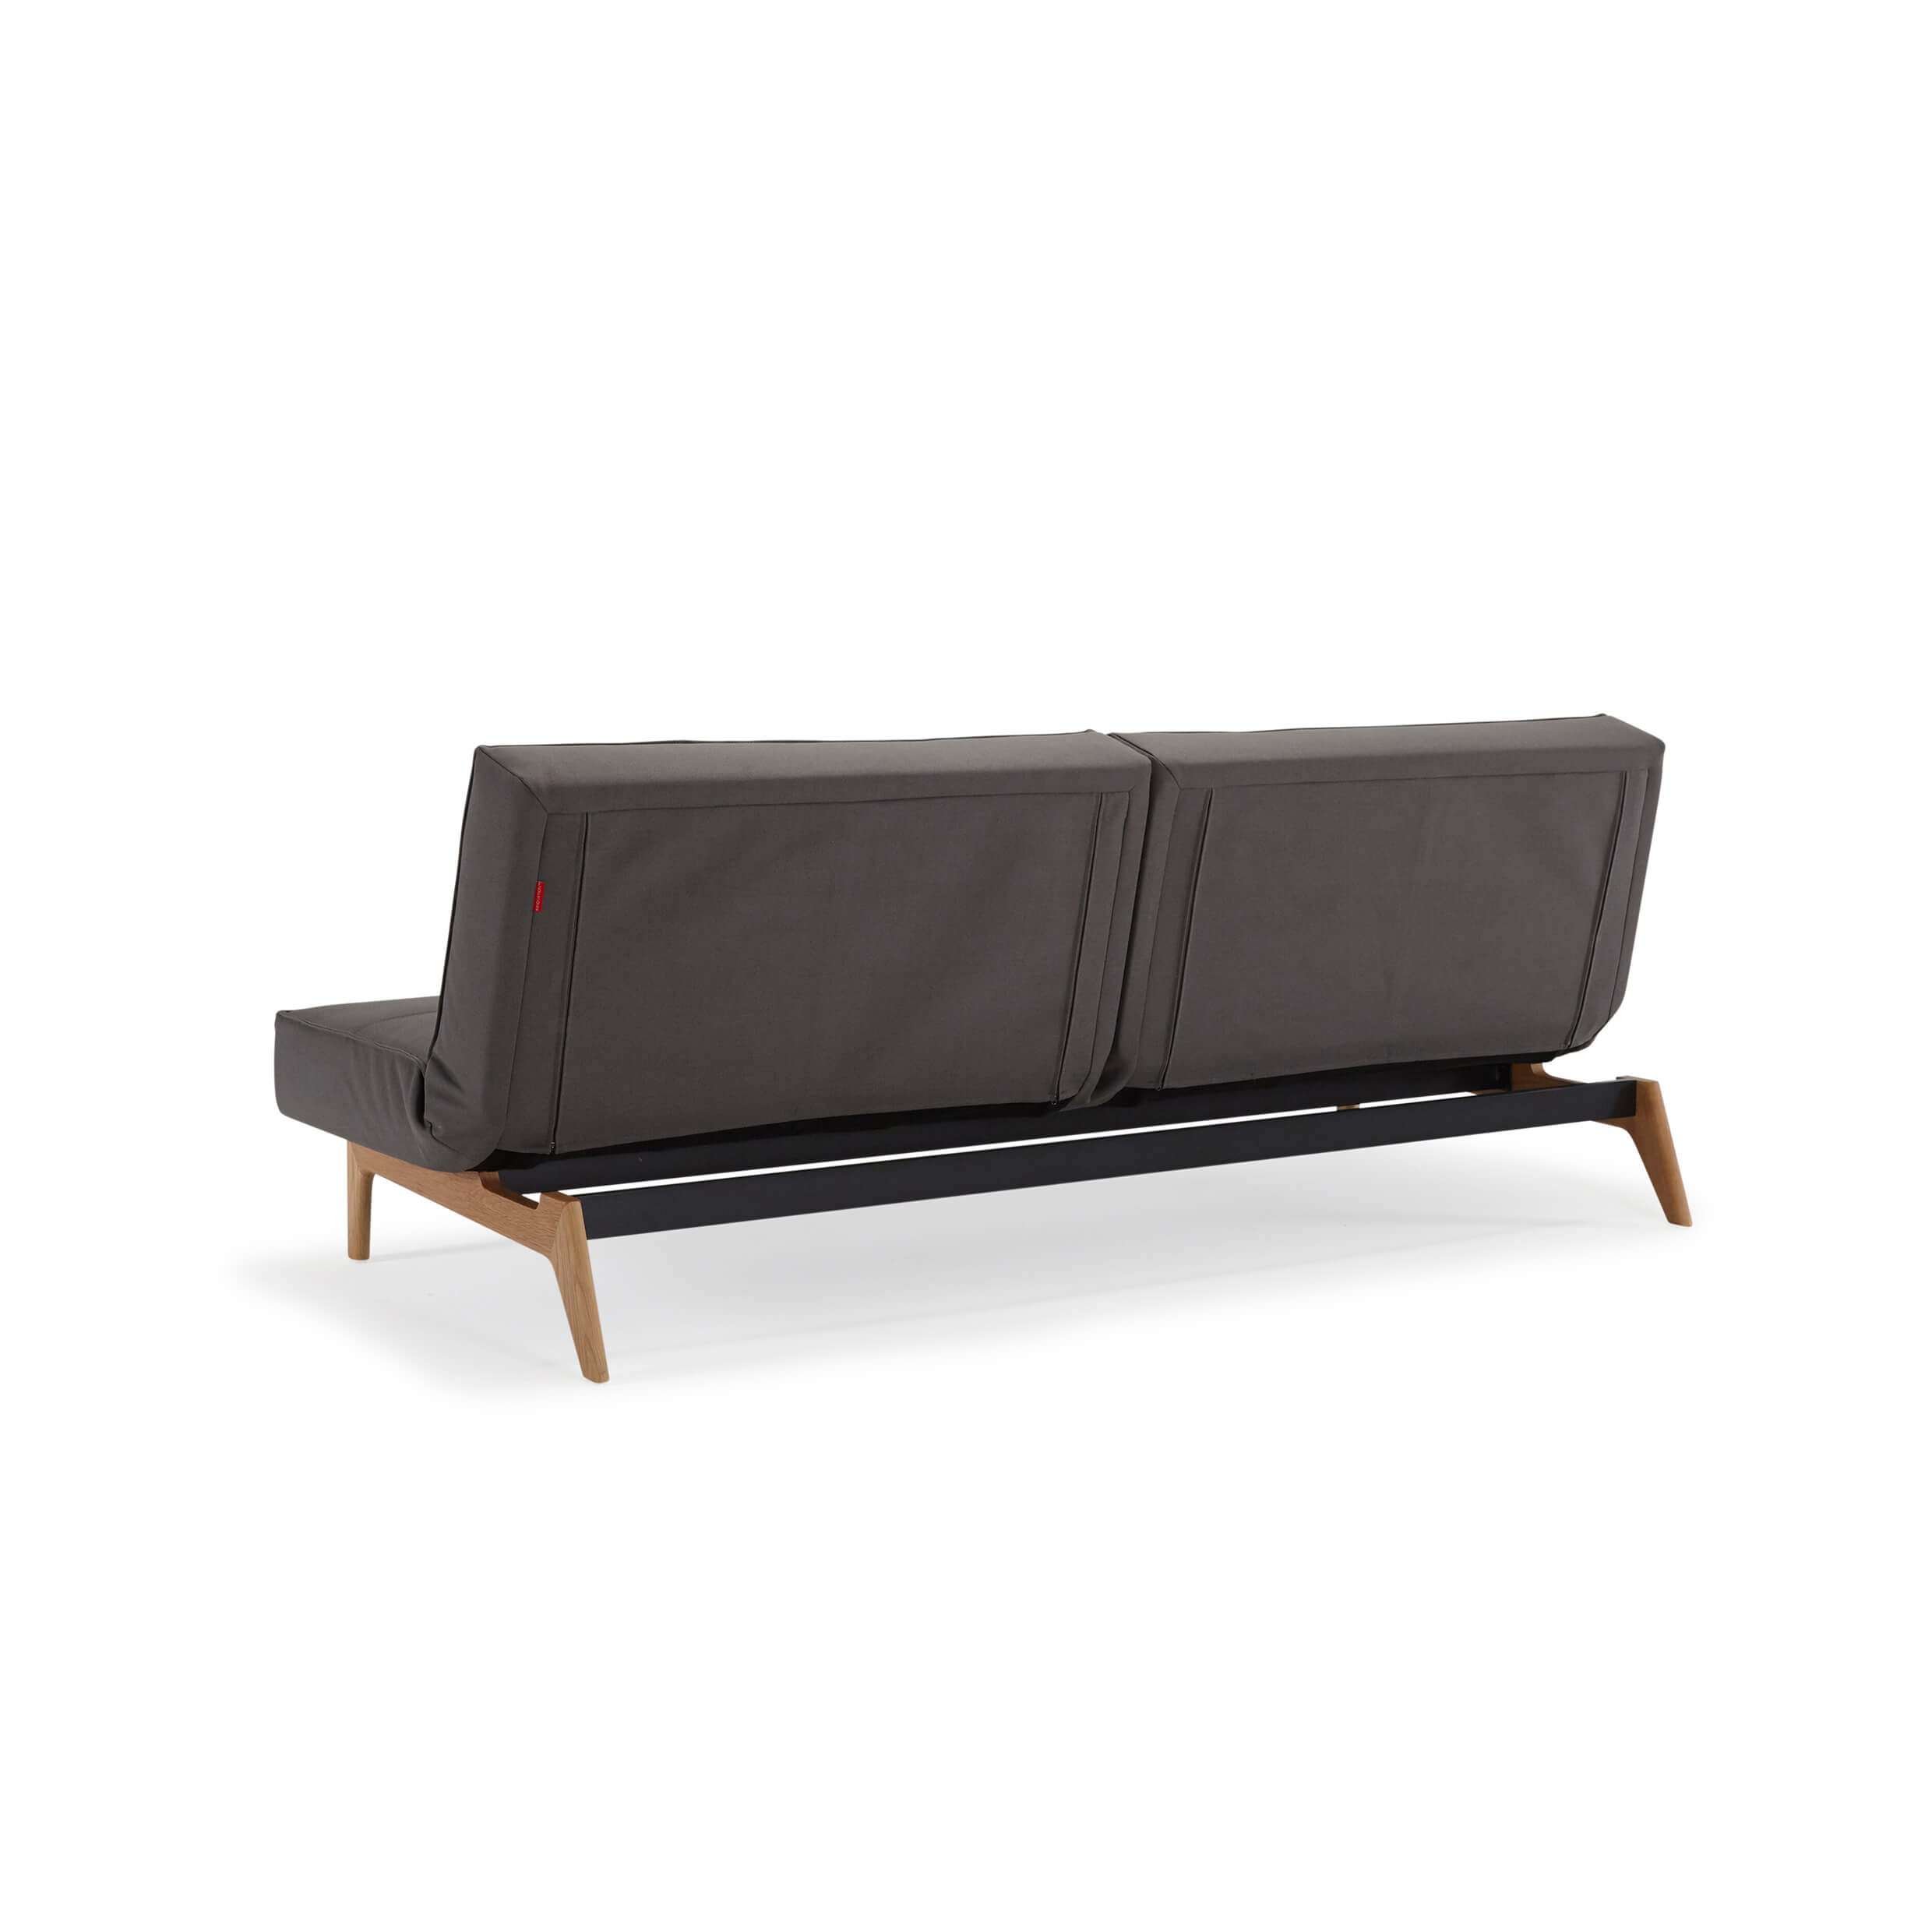 Convertible futon sofa rear view